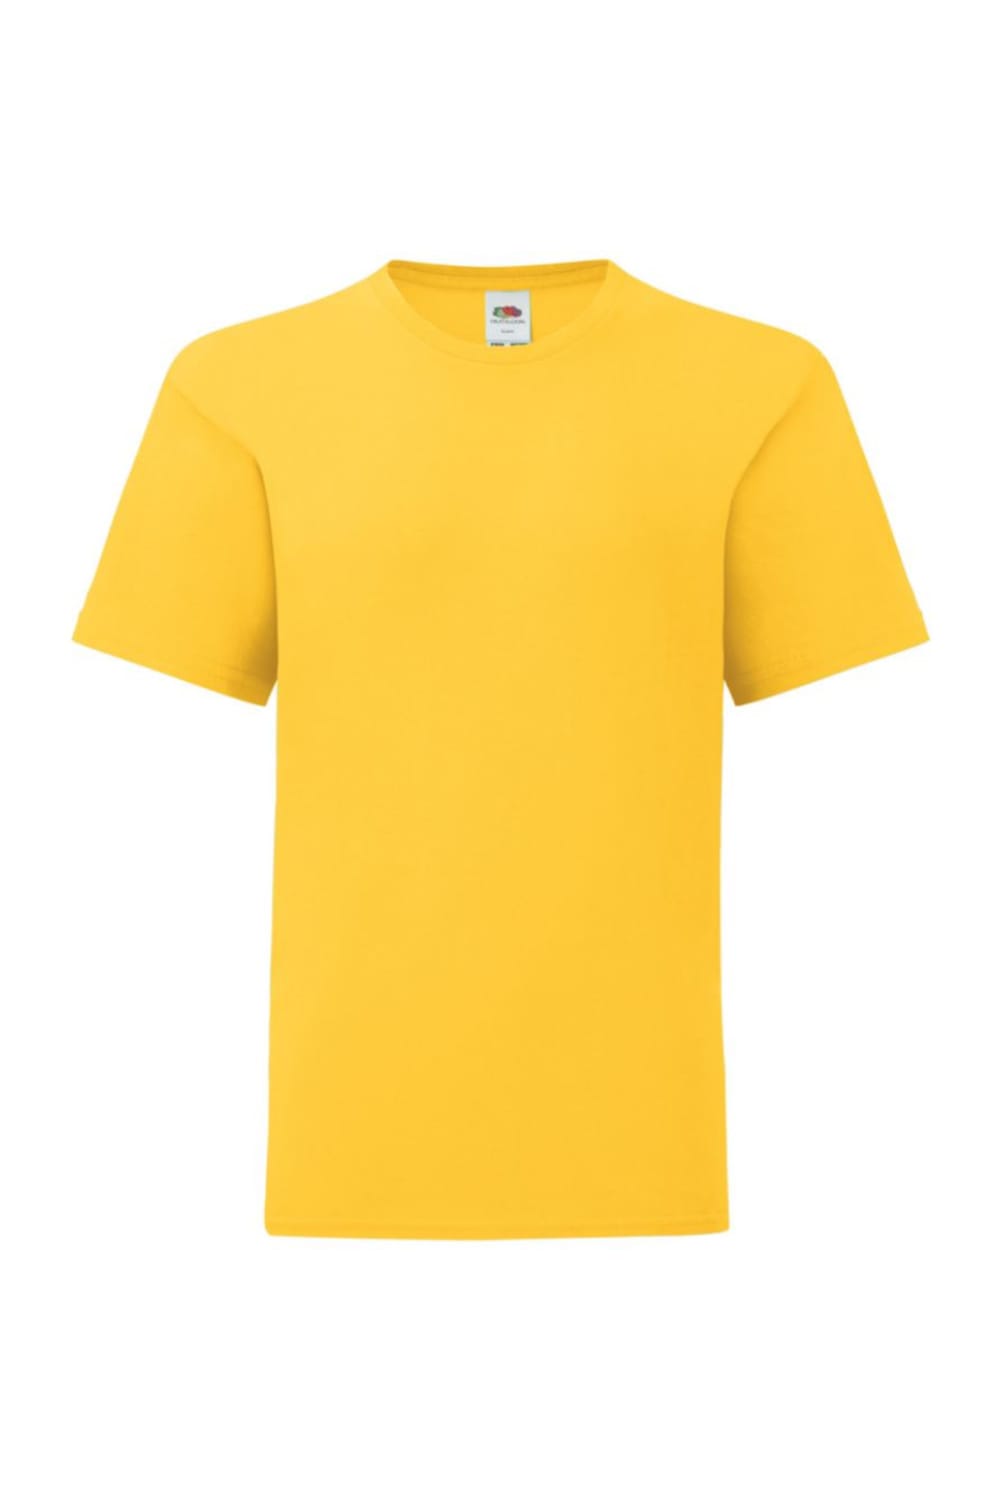 Childrens/Kids Iconic T-Shirt - Sunflower Yellow